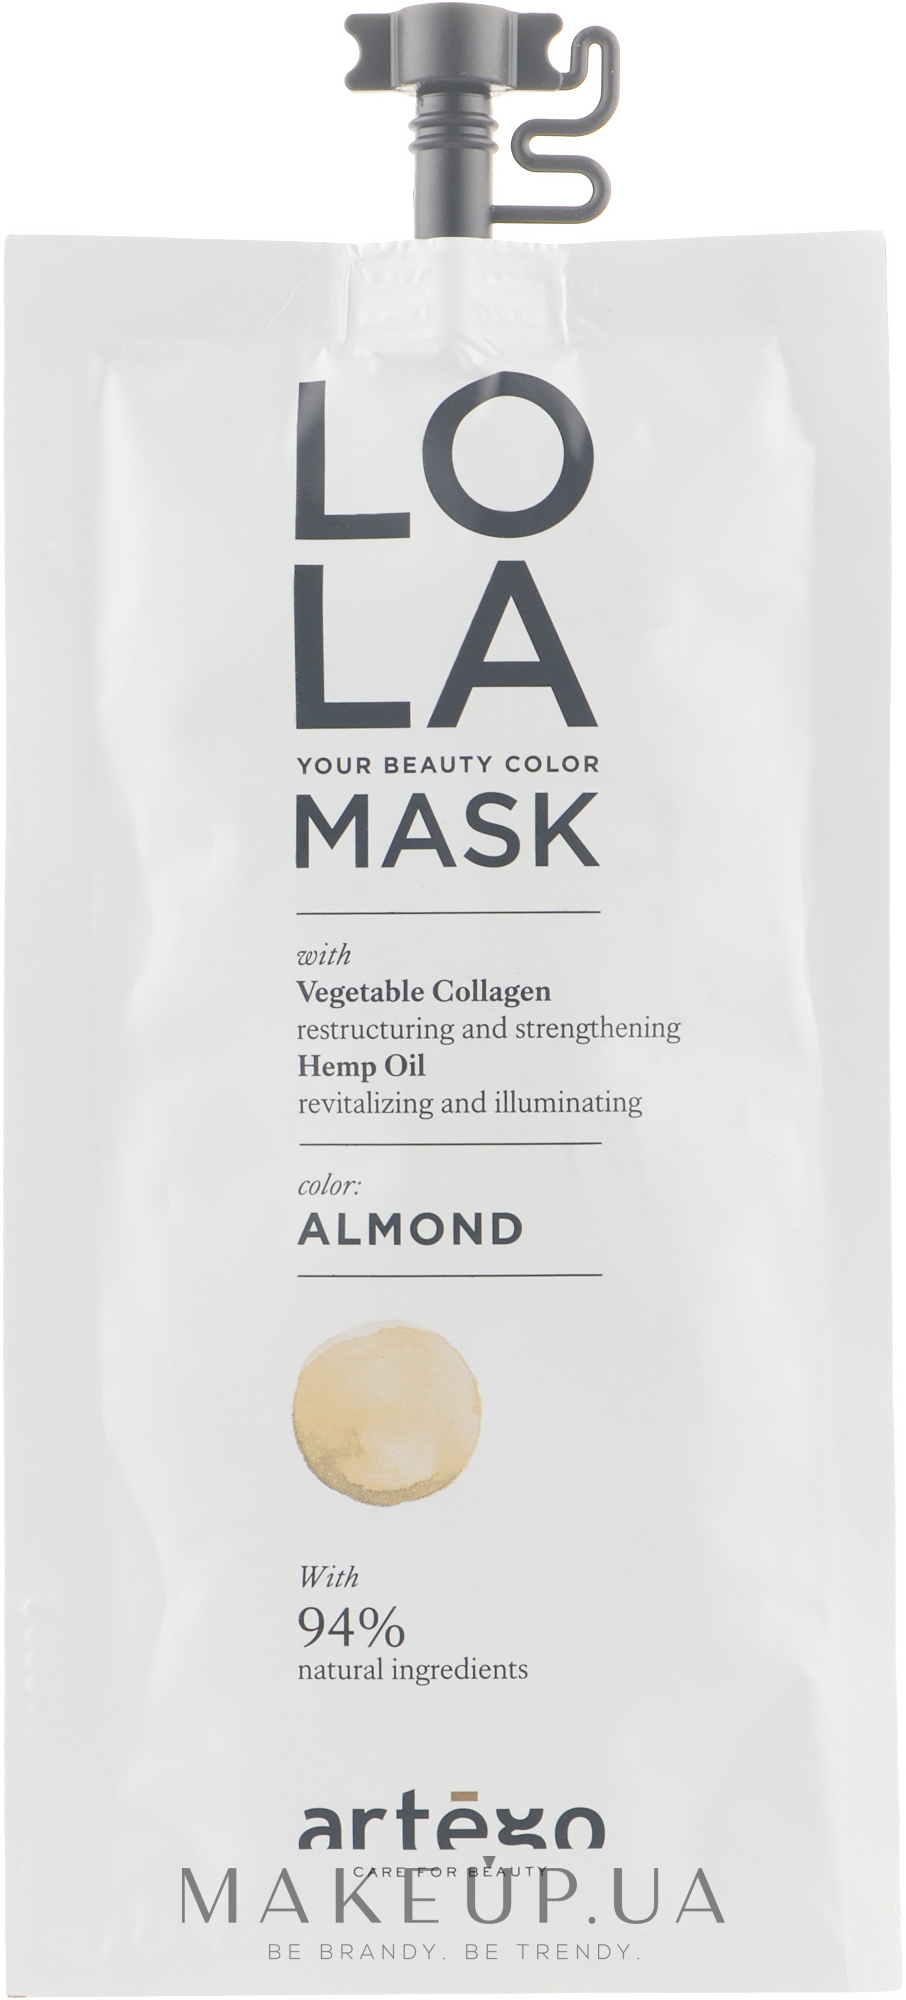 Відтінкова маска - Artego LOLA Your Beauty Color Mask (міні) — фото Almond